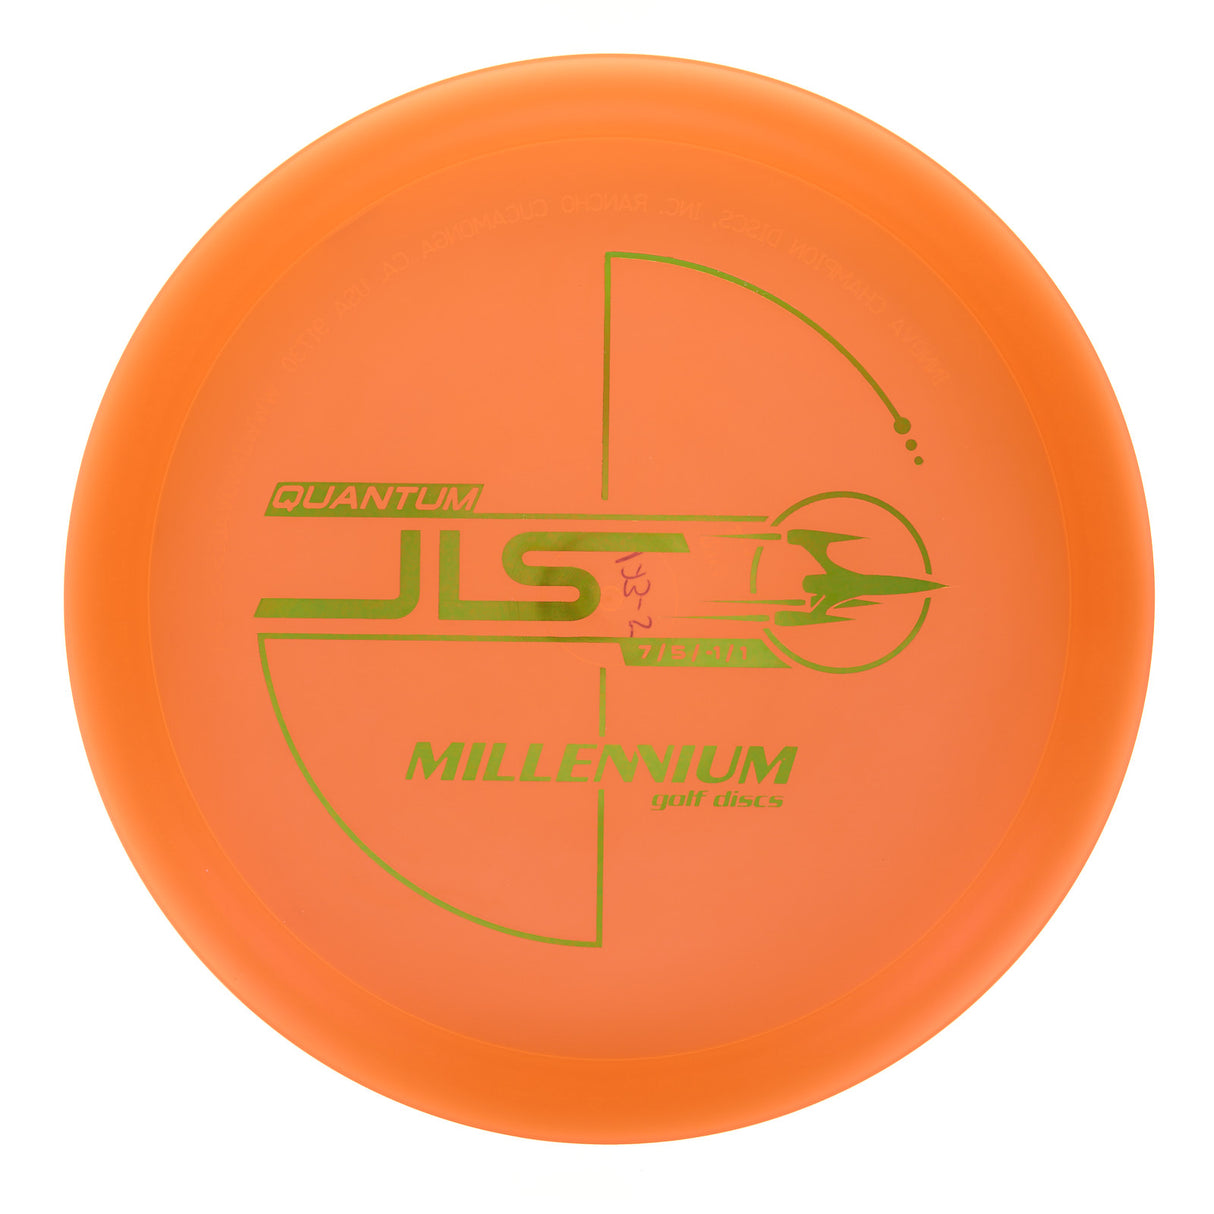 Millennium JLS - Quantum  175g | Style 0002